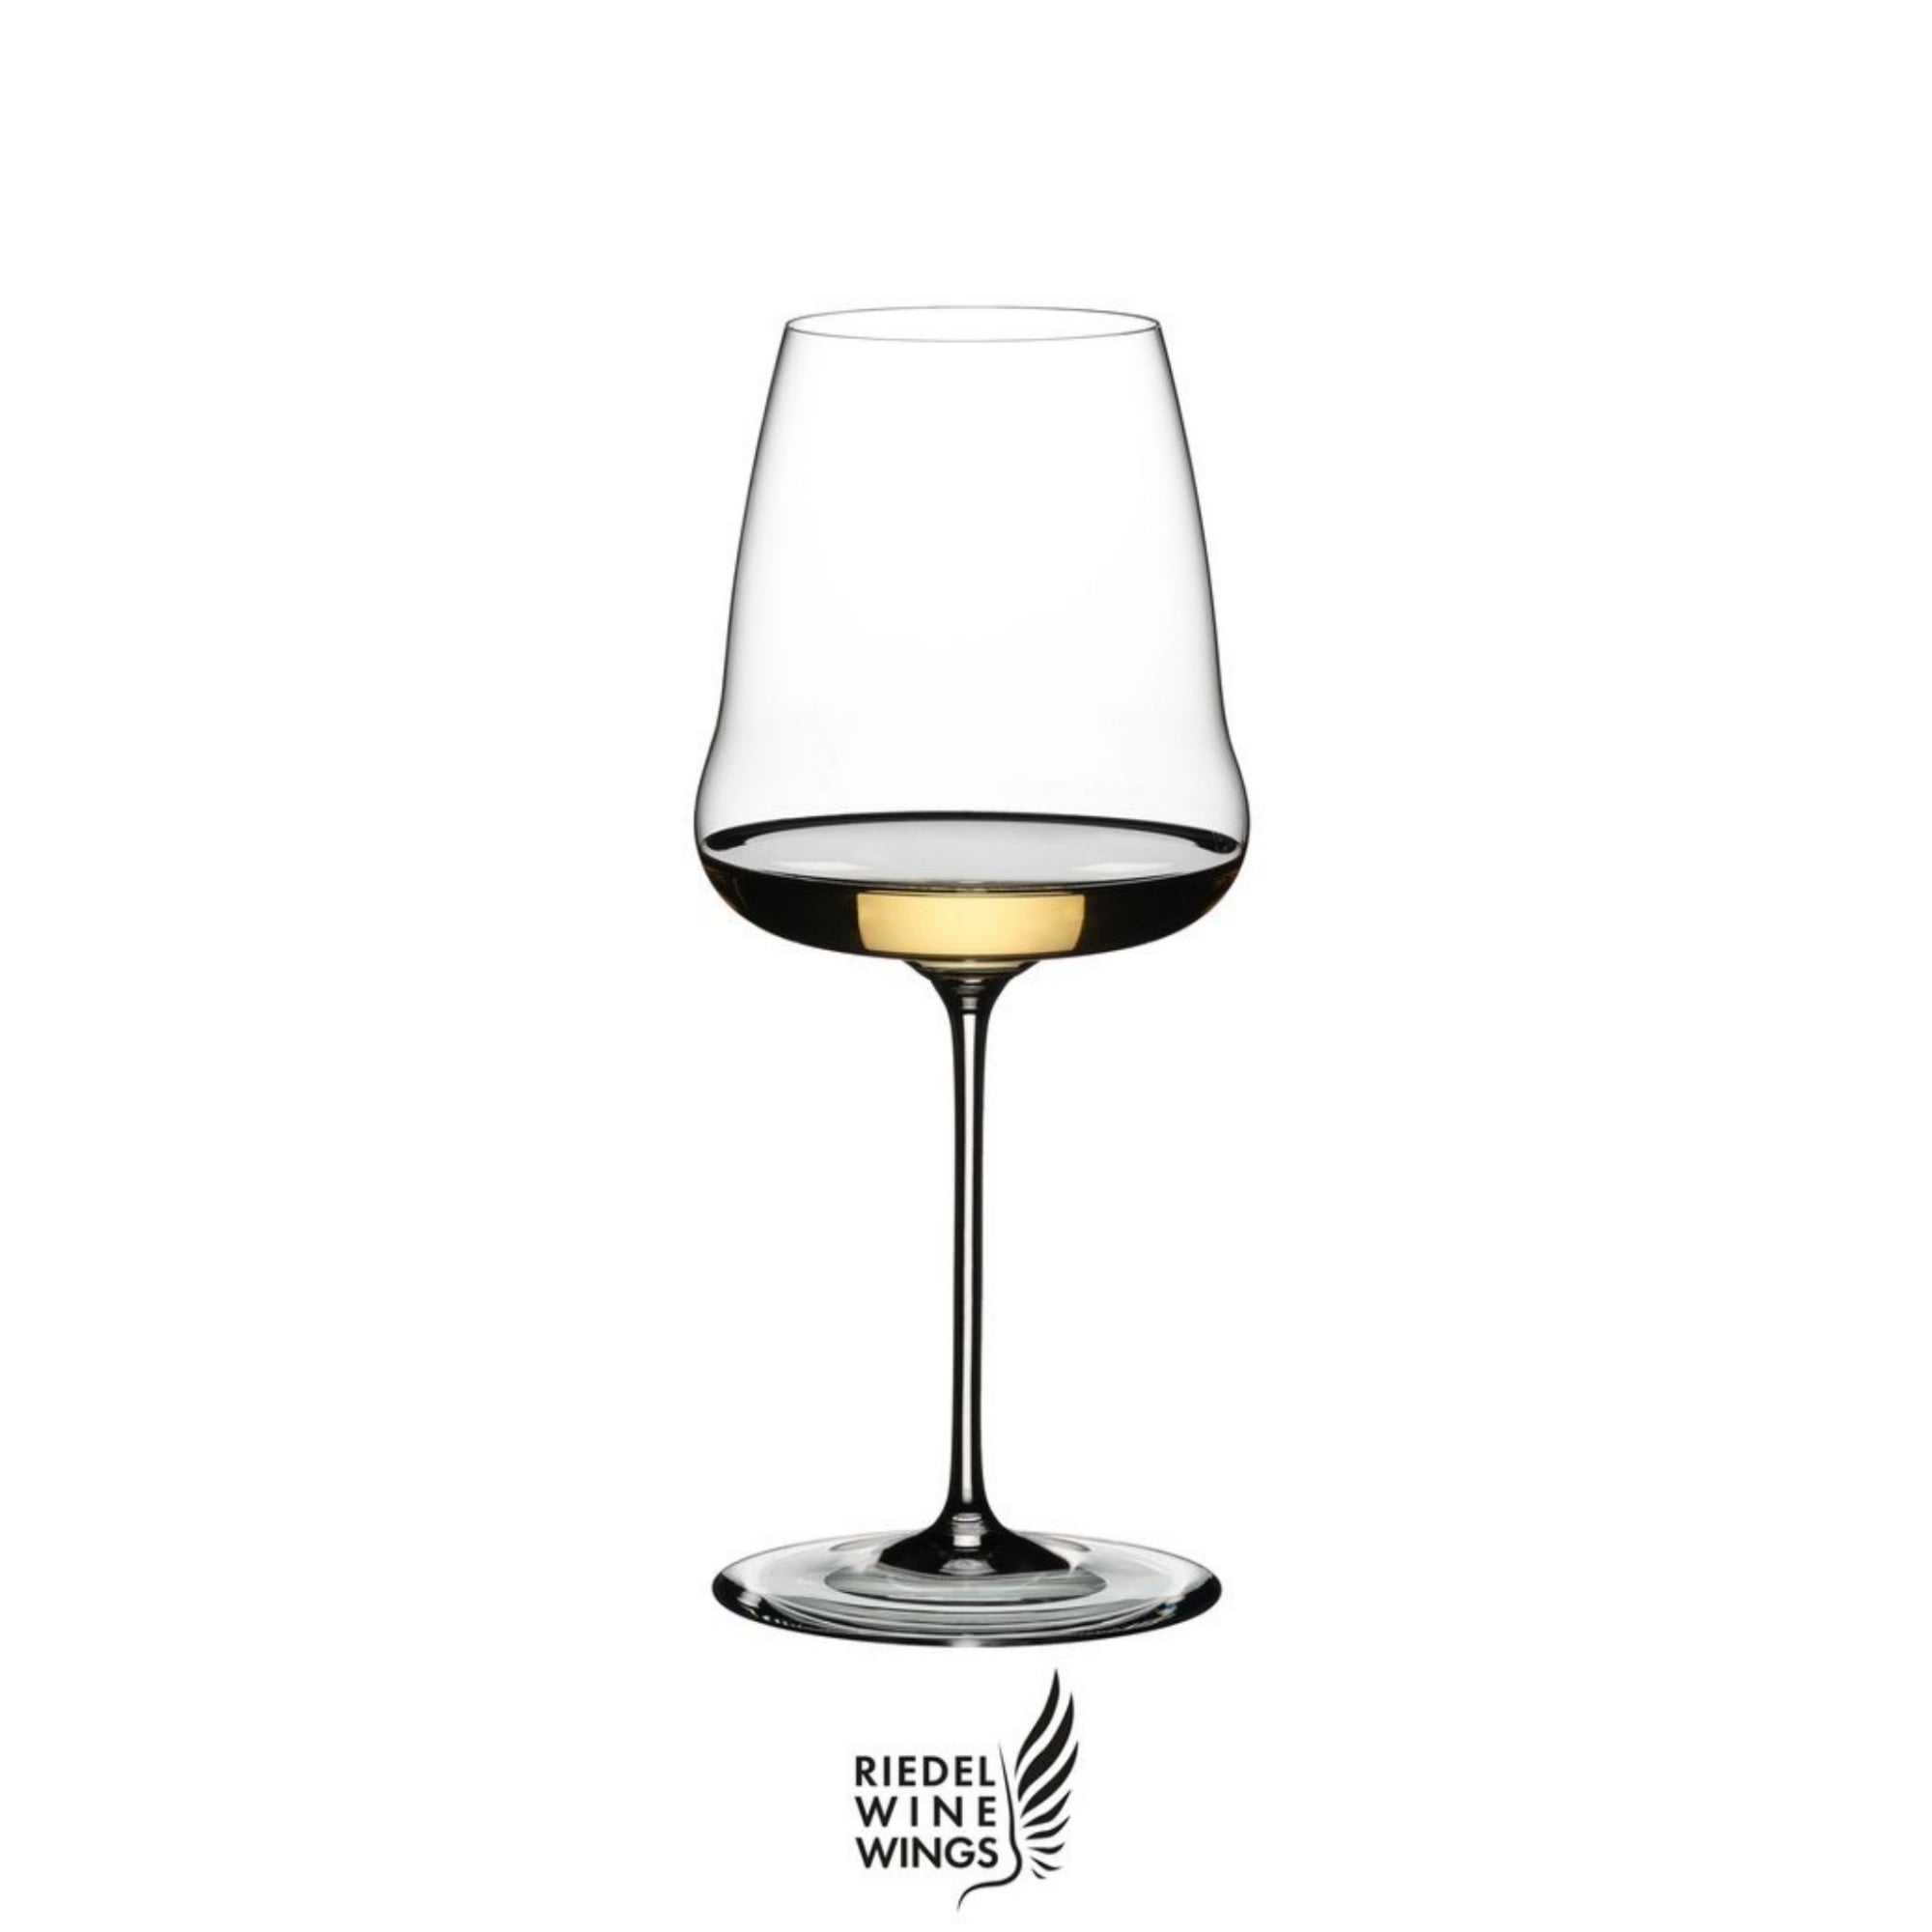 Riedel Winewings Calice Chardonnay, confezione singola